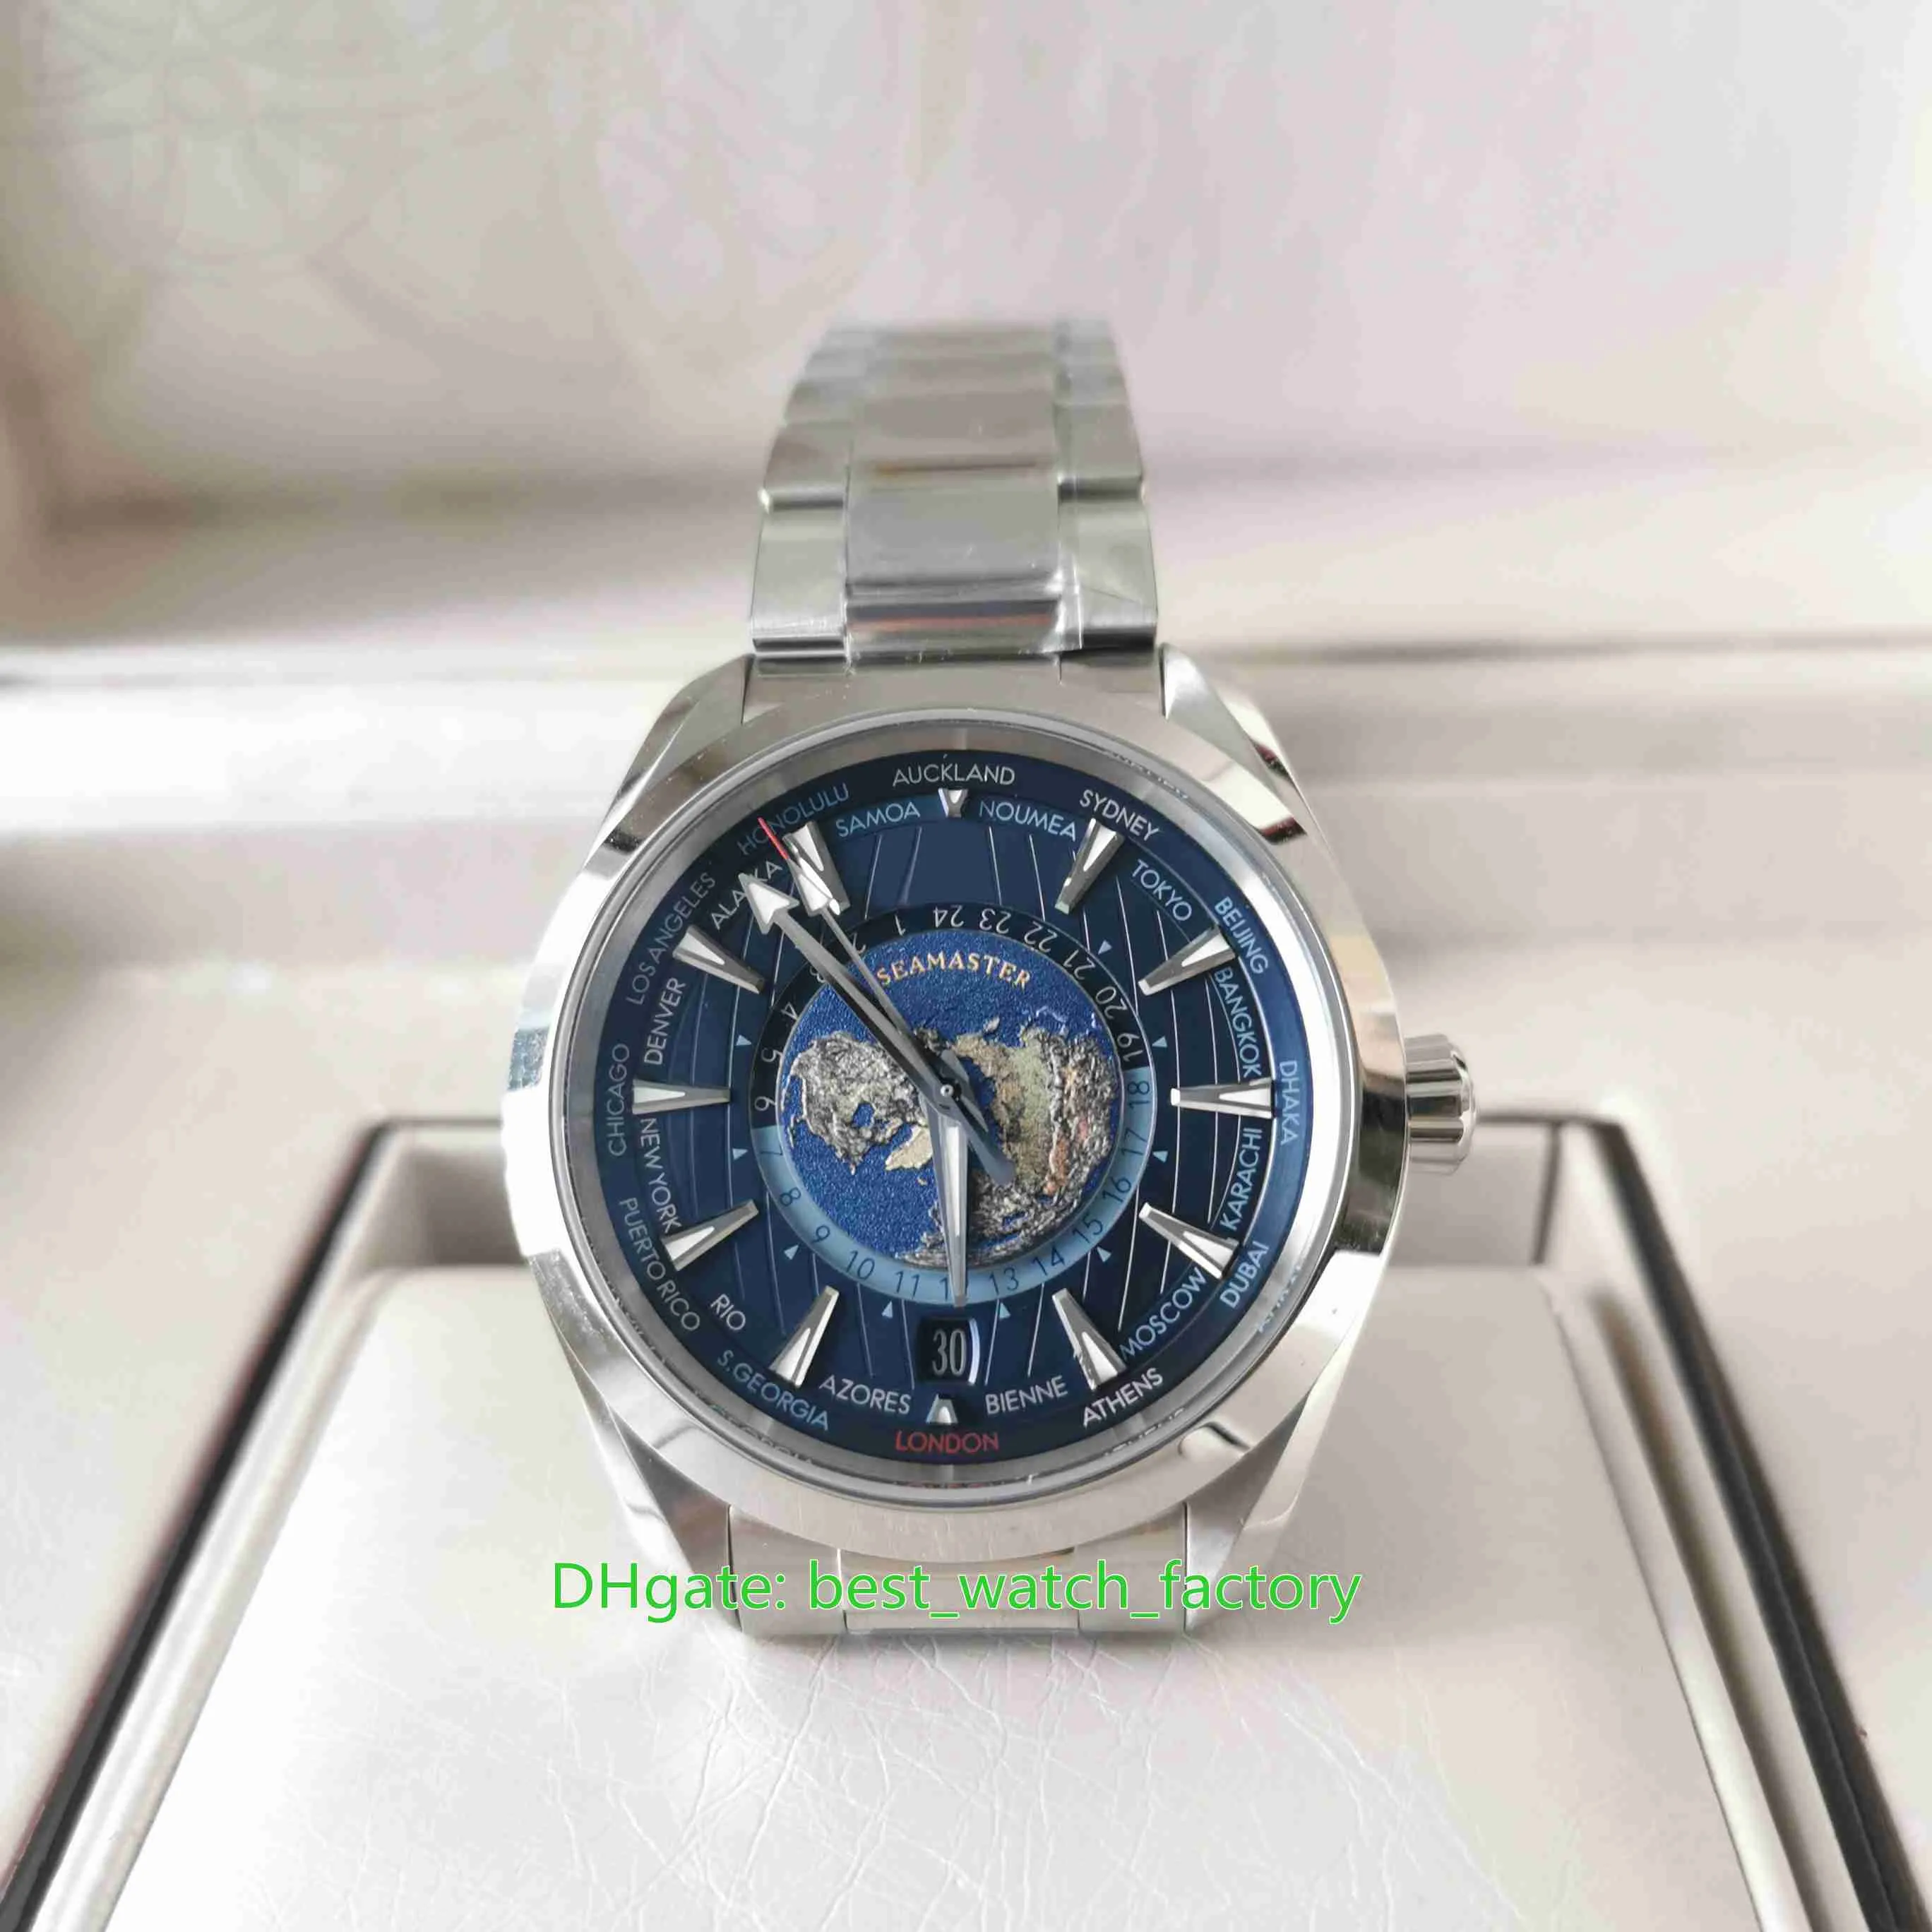 Vsf produttore maschile orologio super qualit￠ 43mm aqua terra 150m mappa universale blu ocean